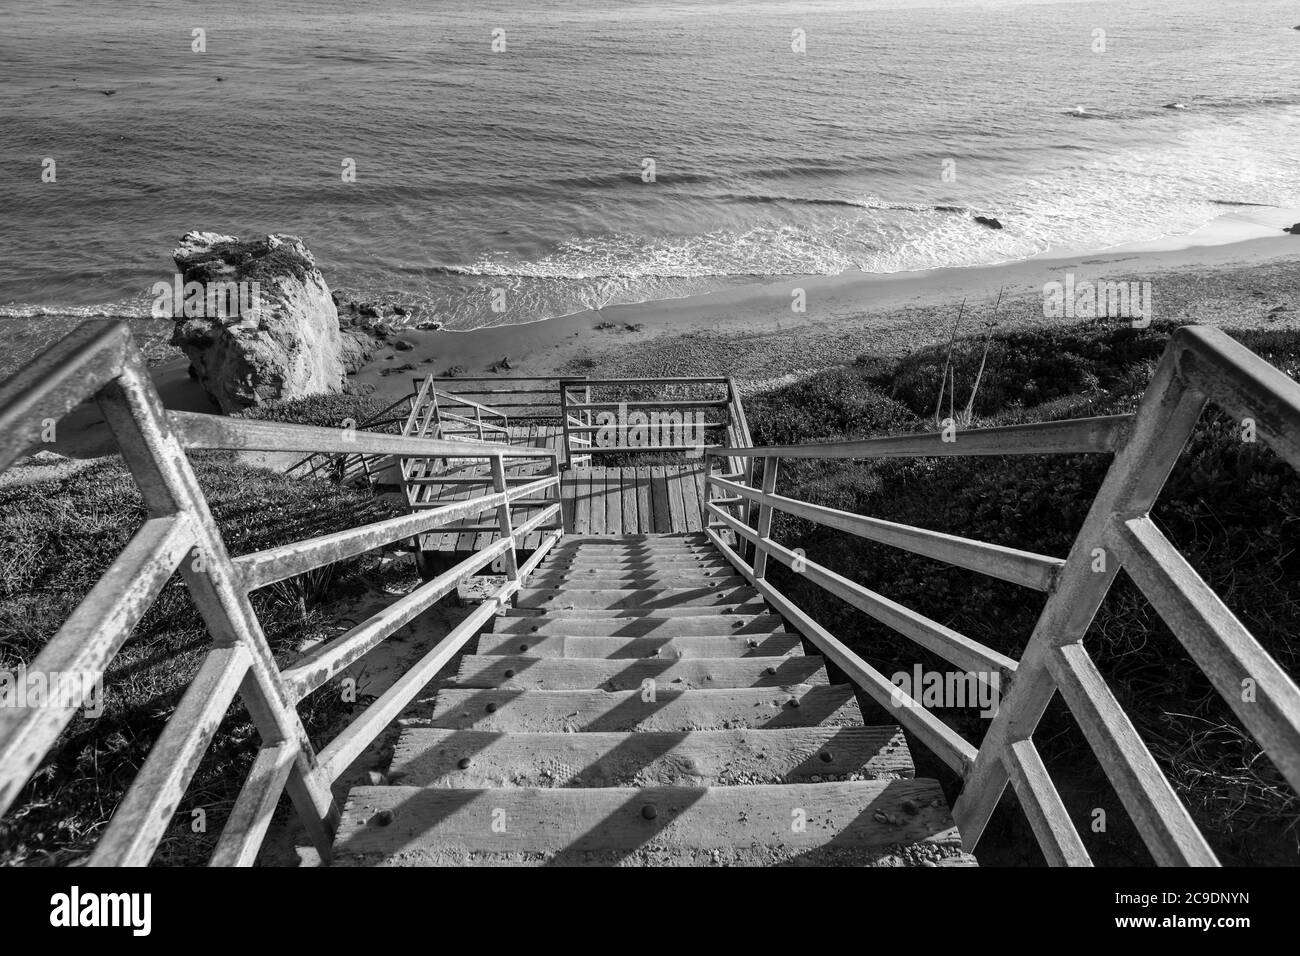 Vue en noir et blanc des escaliers de la plage El Matador près de Malibu Los Angeles County, Californie. Banque D'Images